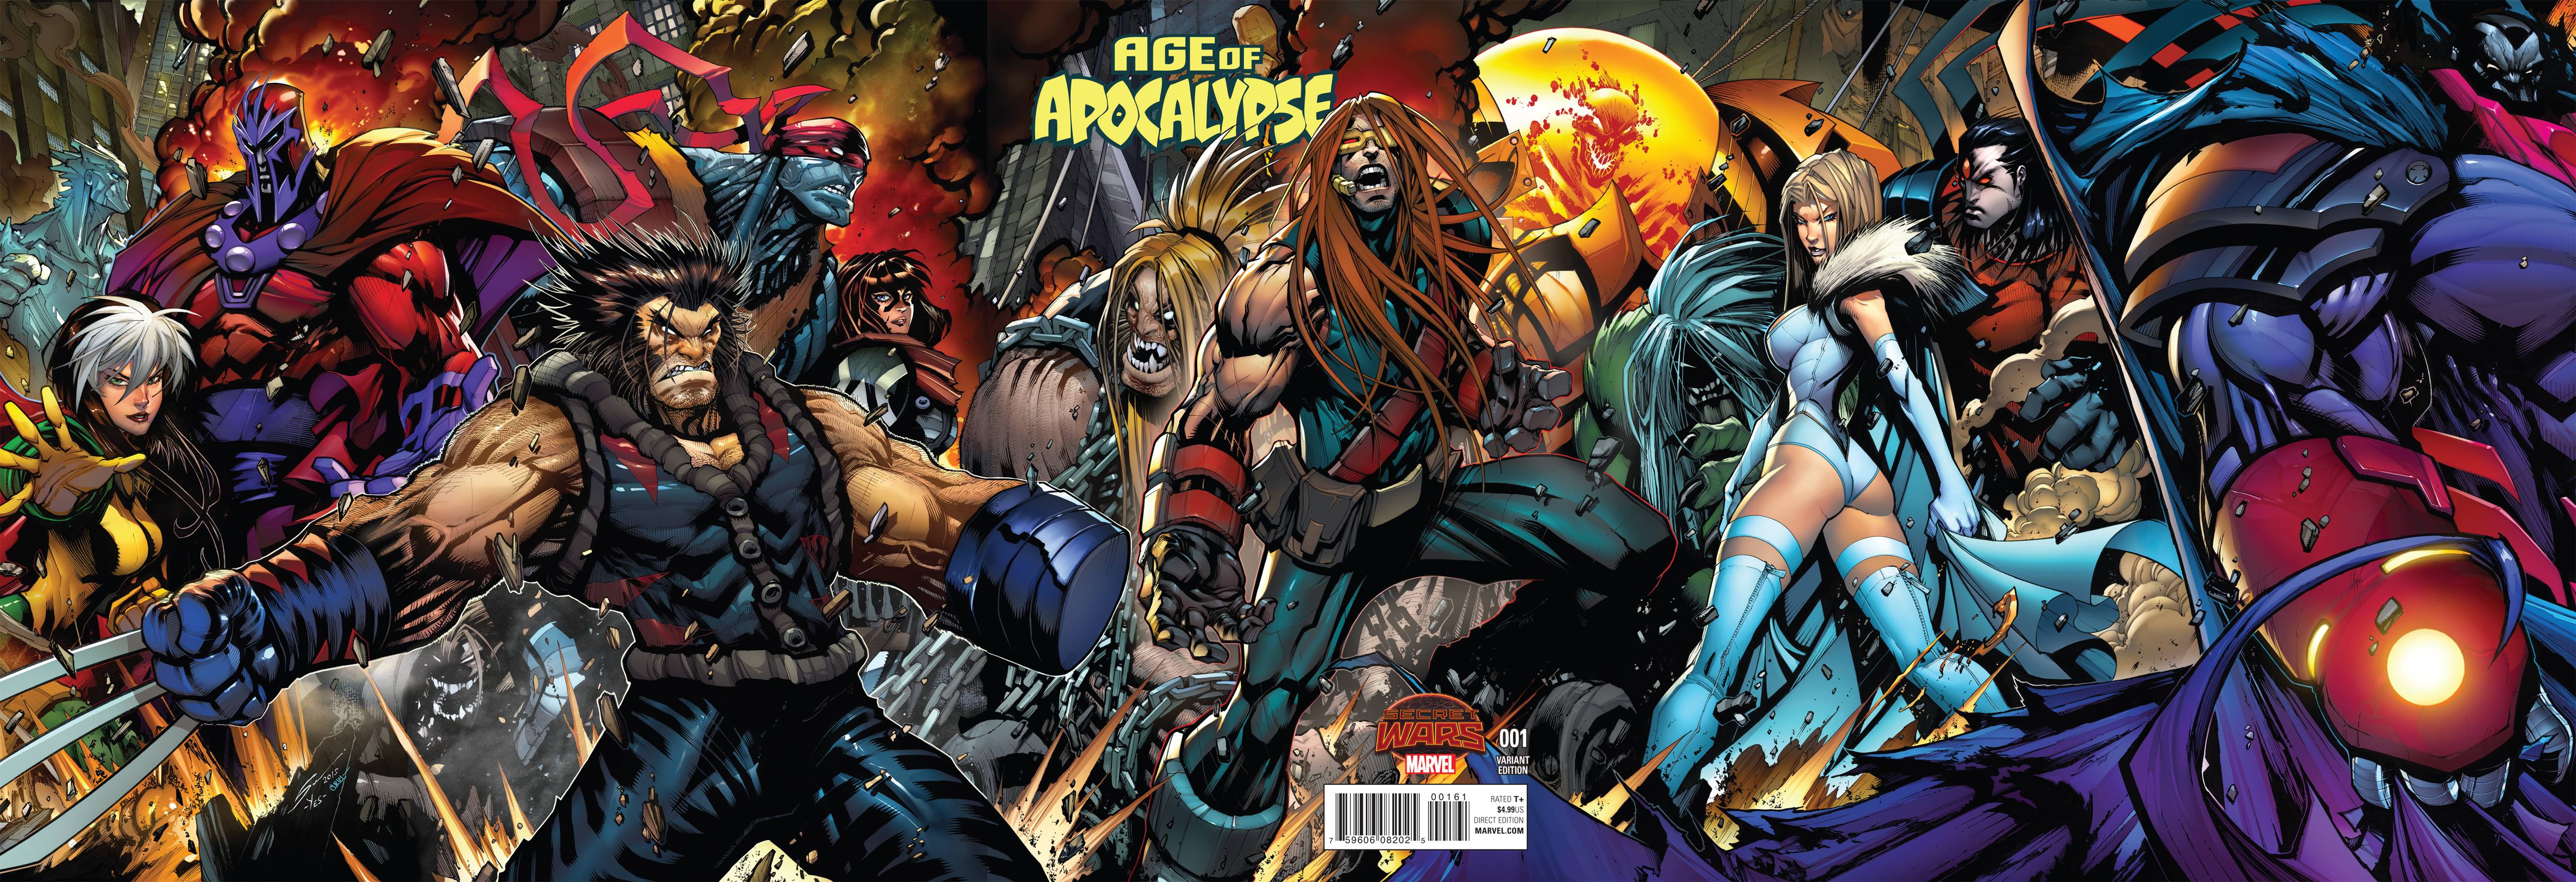 Age Of Apocalypse #3